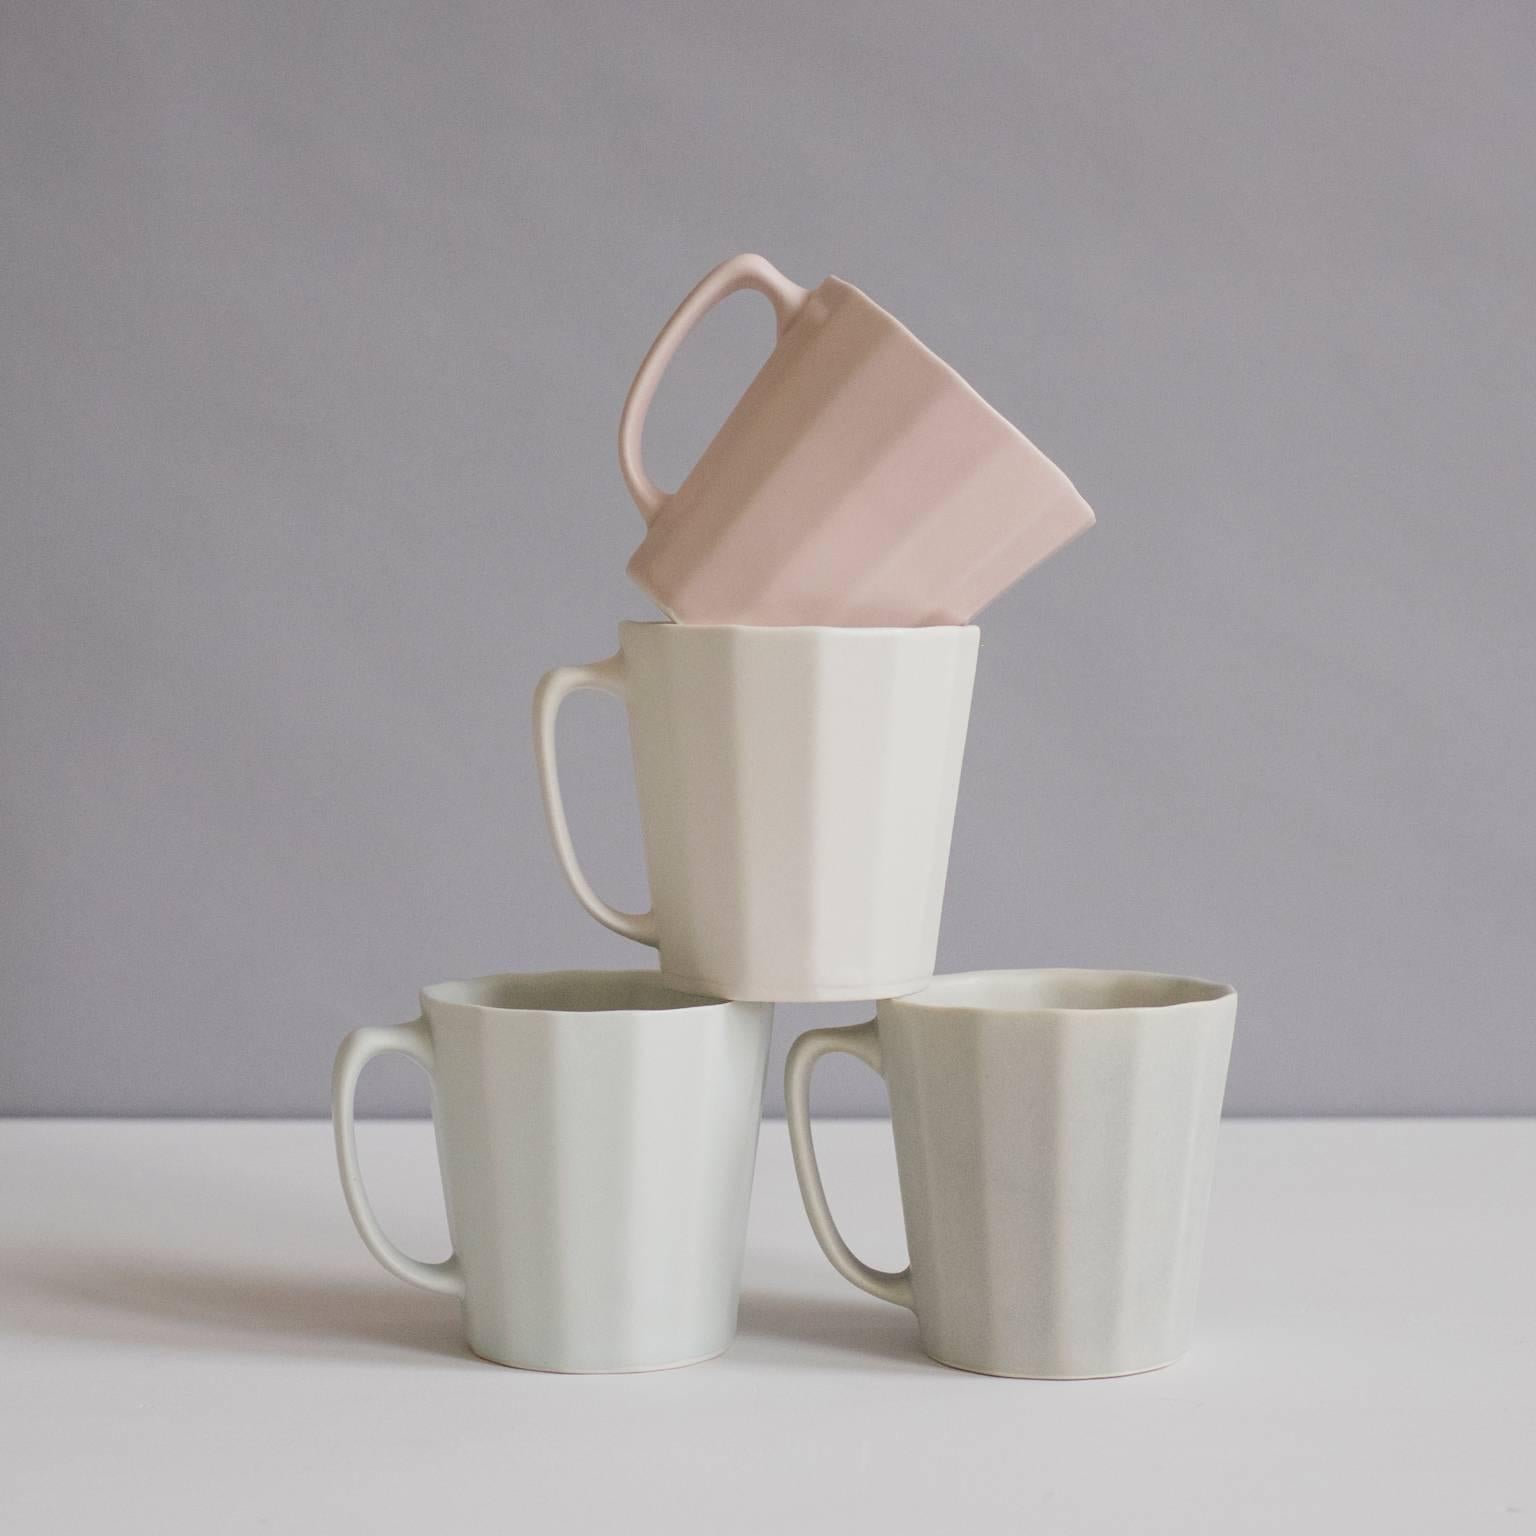 contemporary mug sets